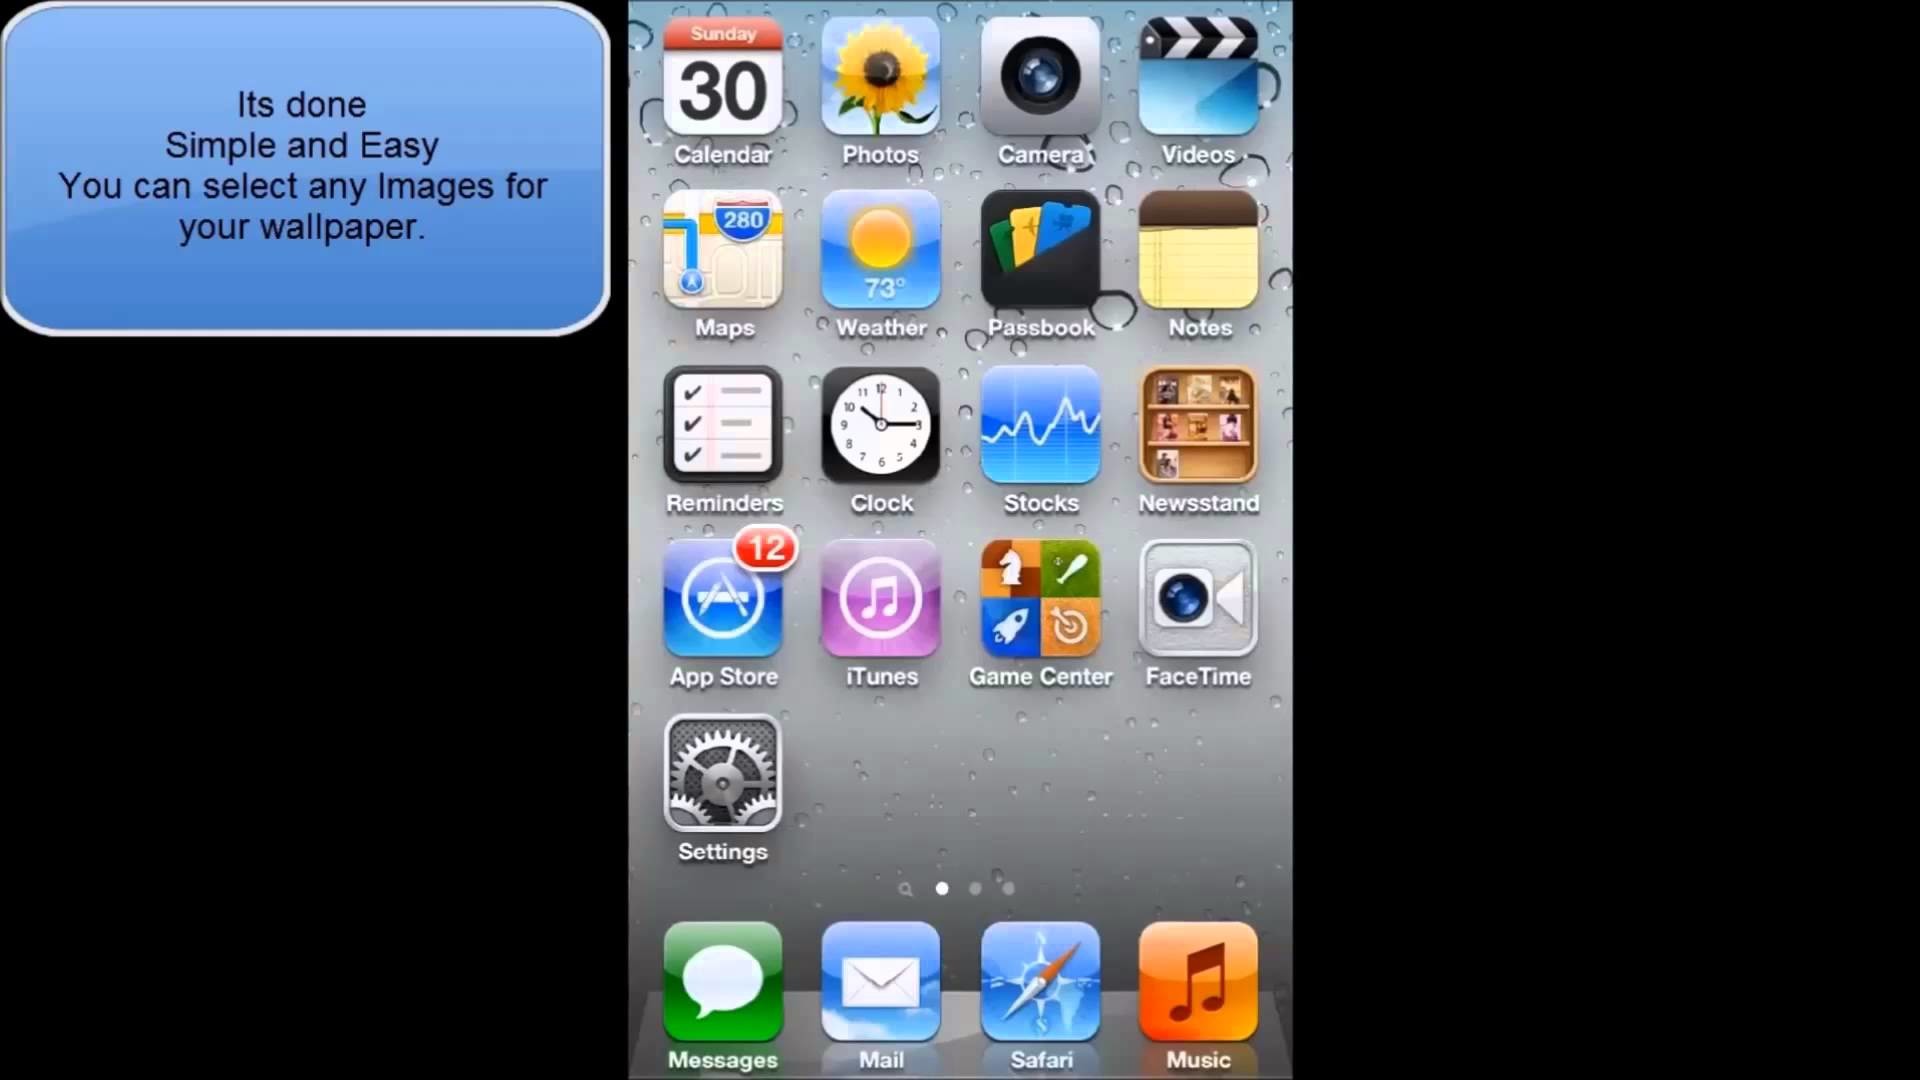 sfondo per ipod 6,aggeggio,smartphone,dispositivo di comunicazione,i phone,dispositivo di comunicazione portatile